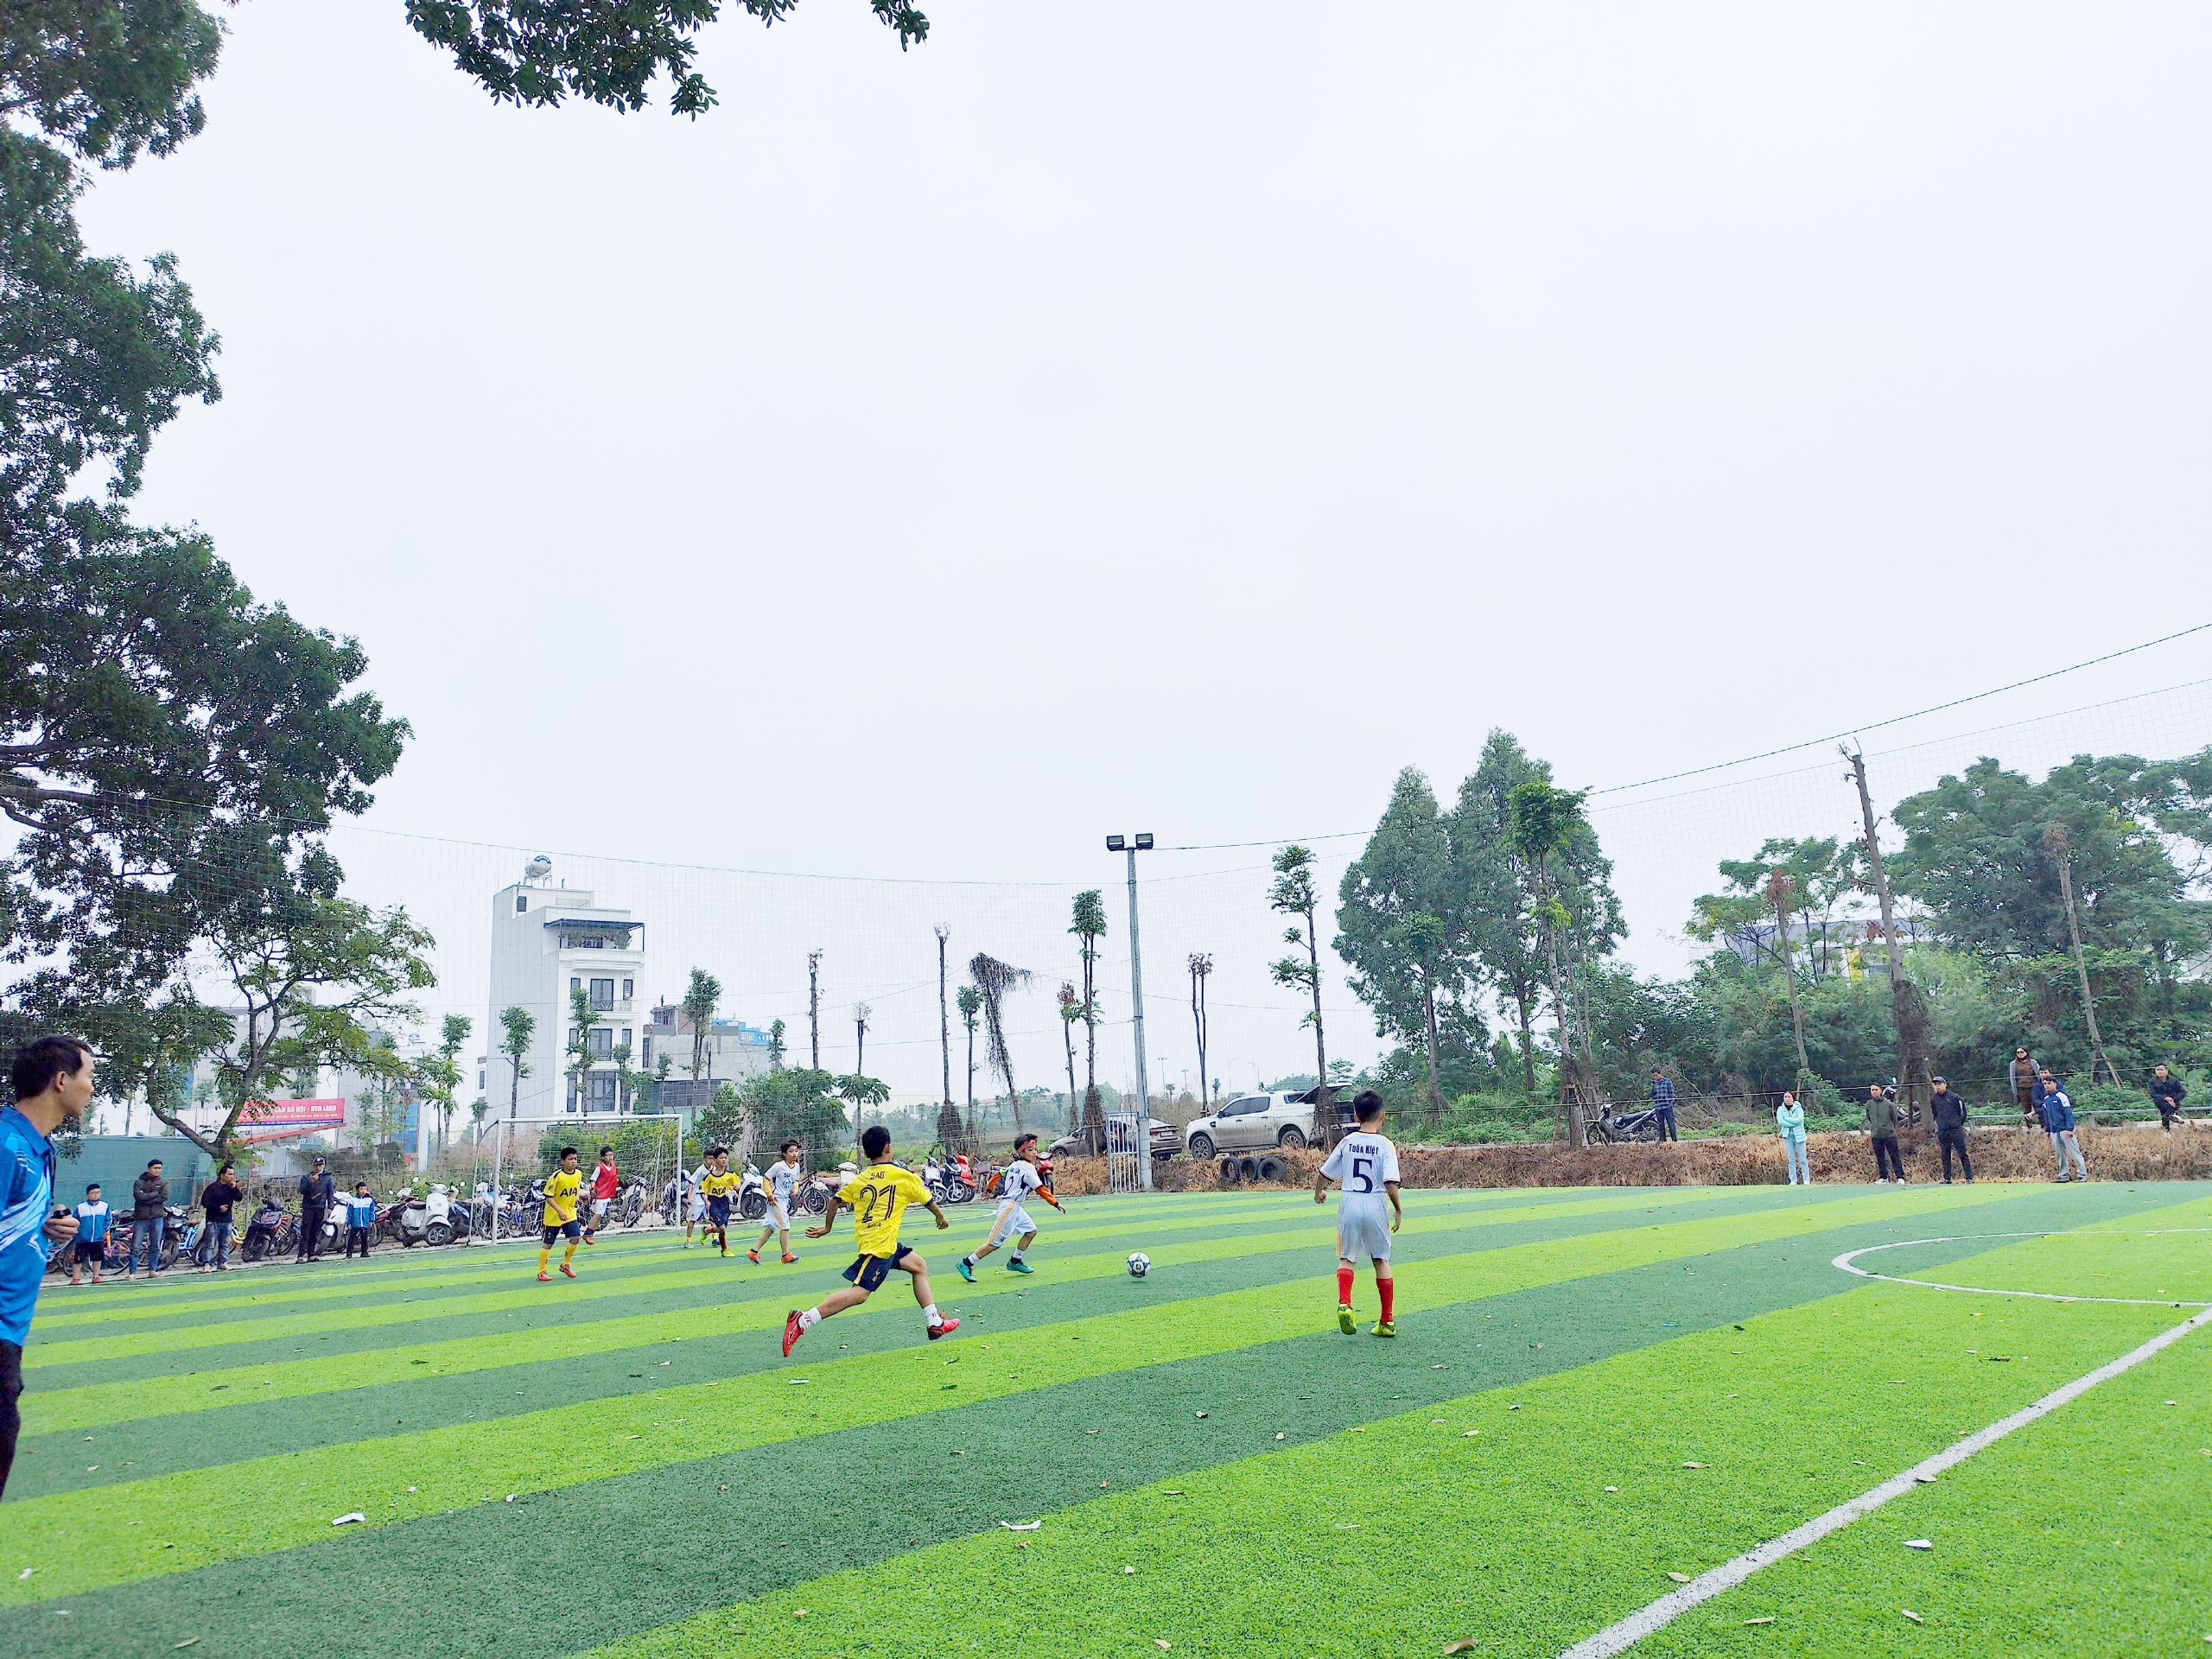 Giải bóng đá học sinh Tiểu học Vân Canh - Những trận bóng sôi nổi